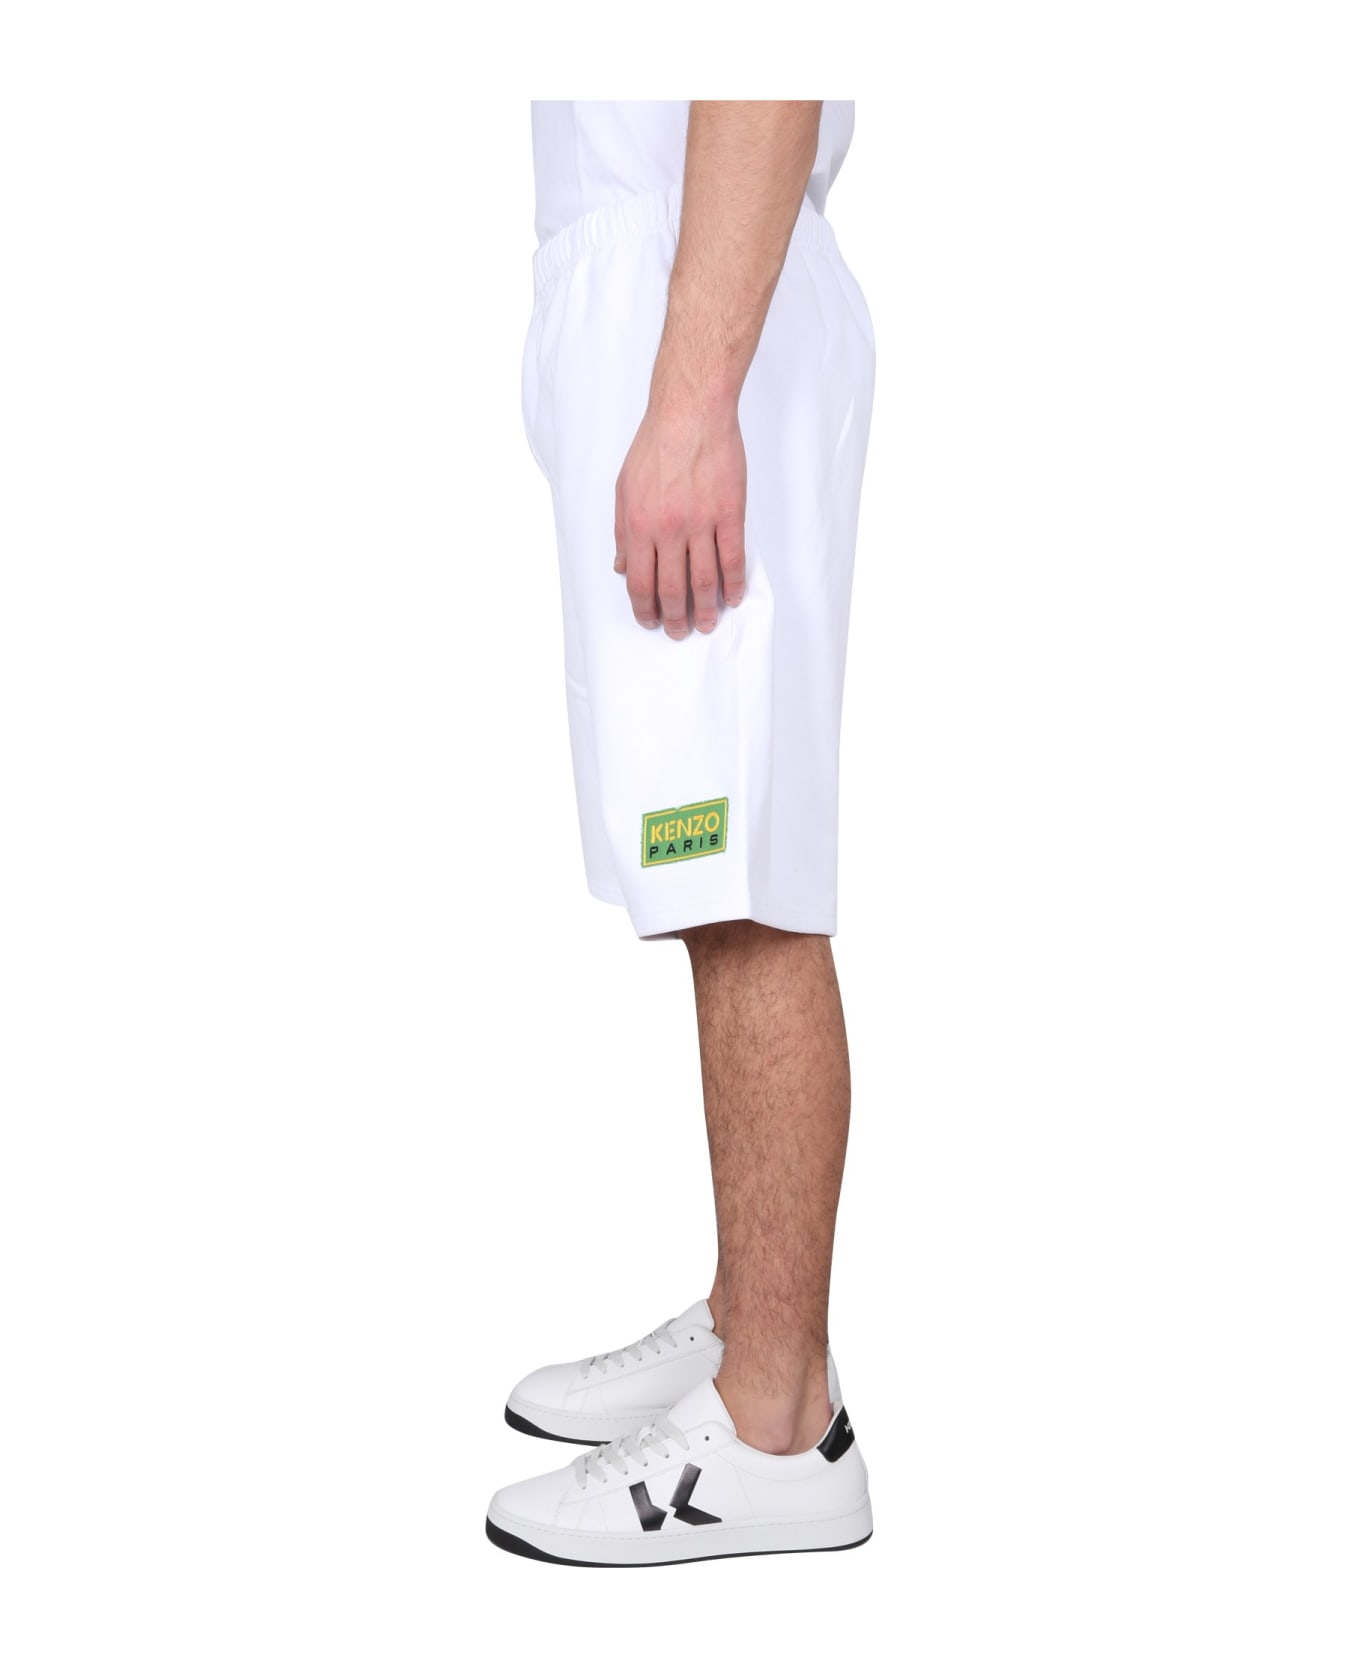 Kenzo Bermuda Shorts - Blanc ショートパンツ